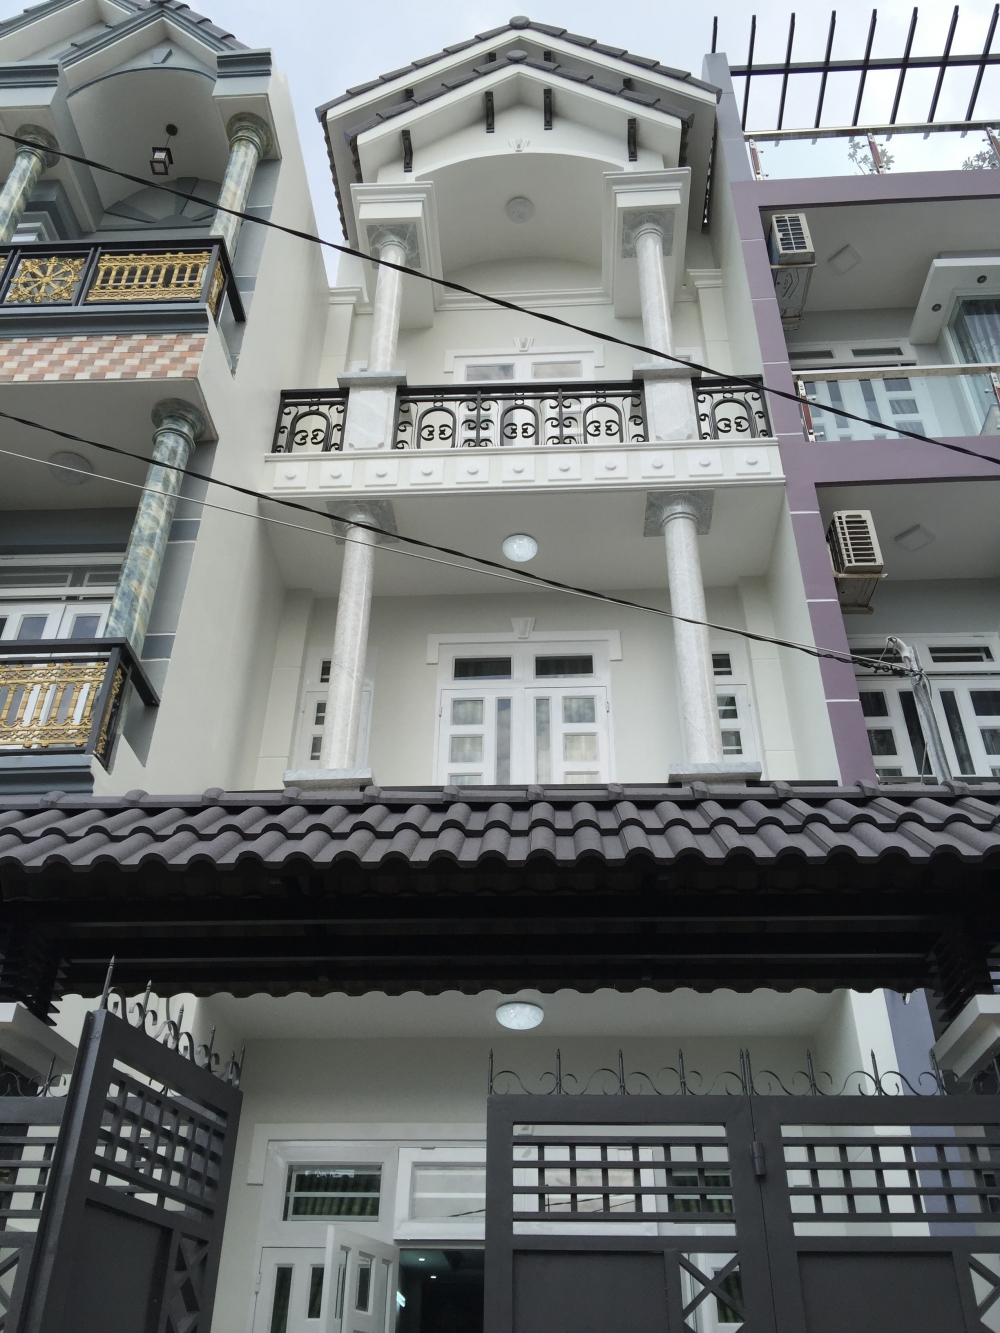 CC cho thuê khách sạn 4 sao 2MT Nguyễn Thị Minh Khai 100 phòng gần Dinh Độc Lập